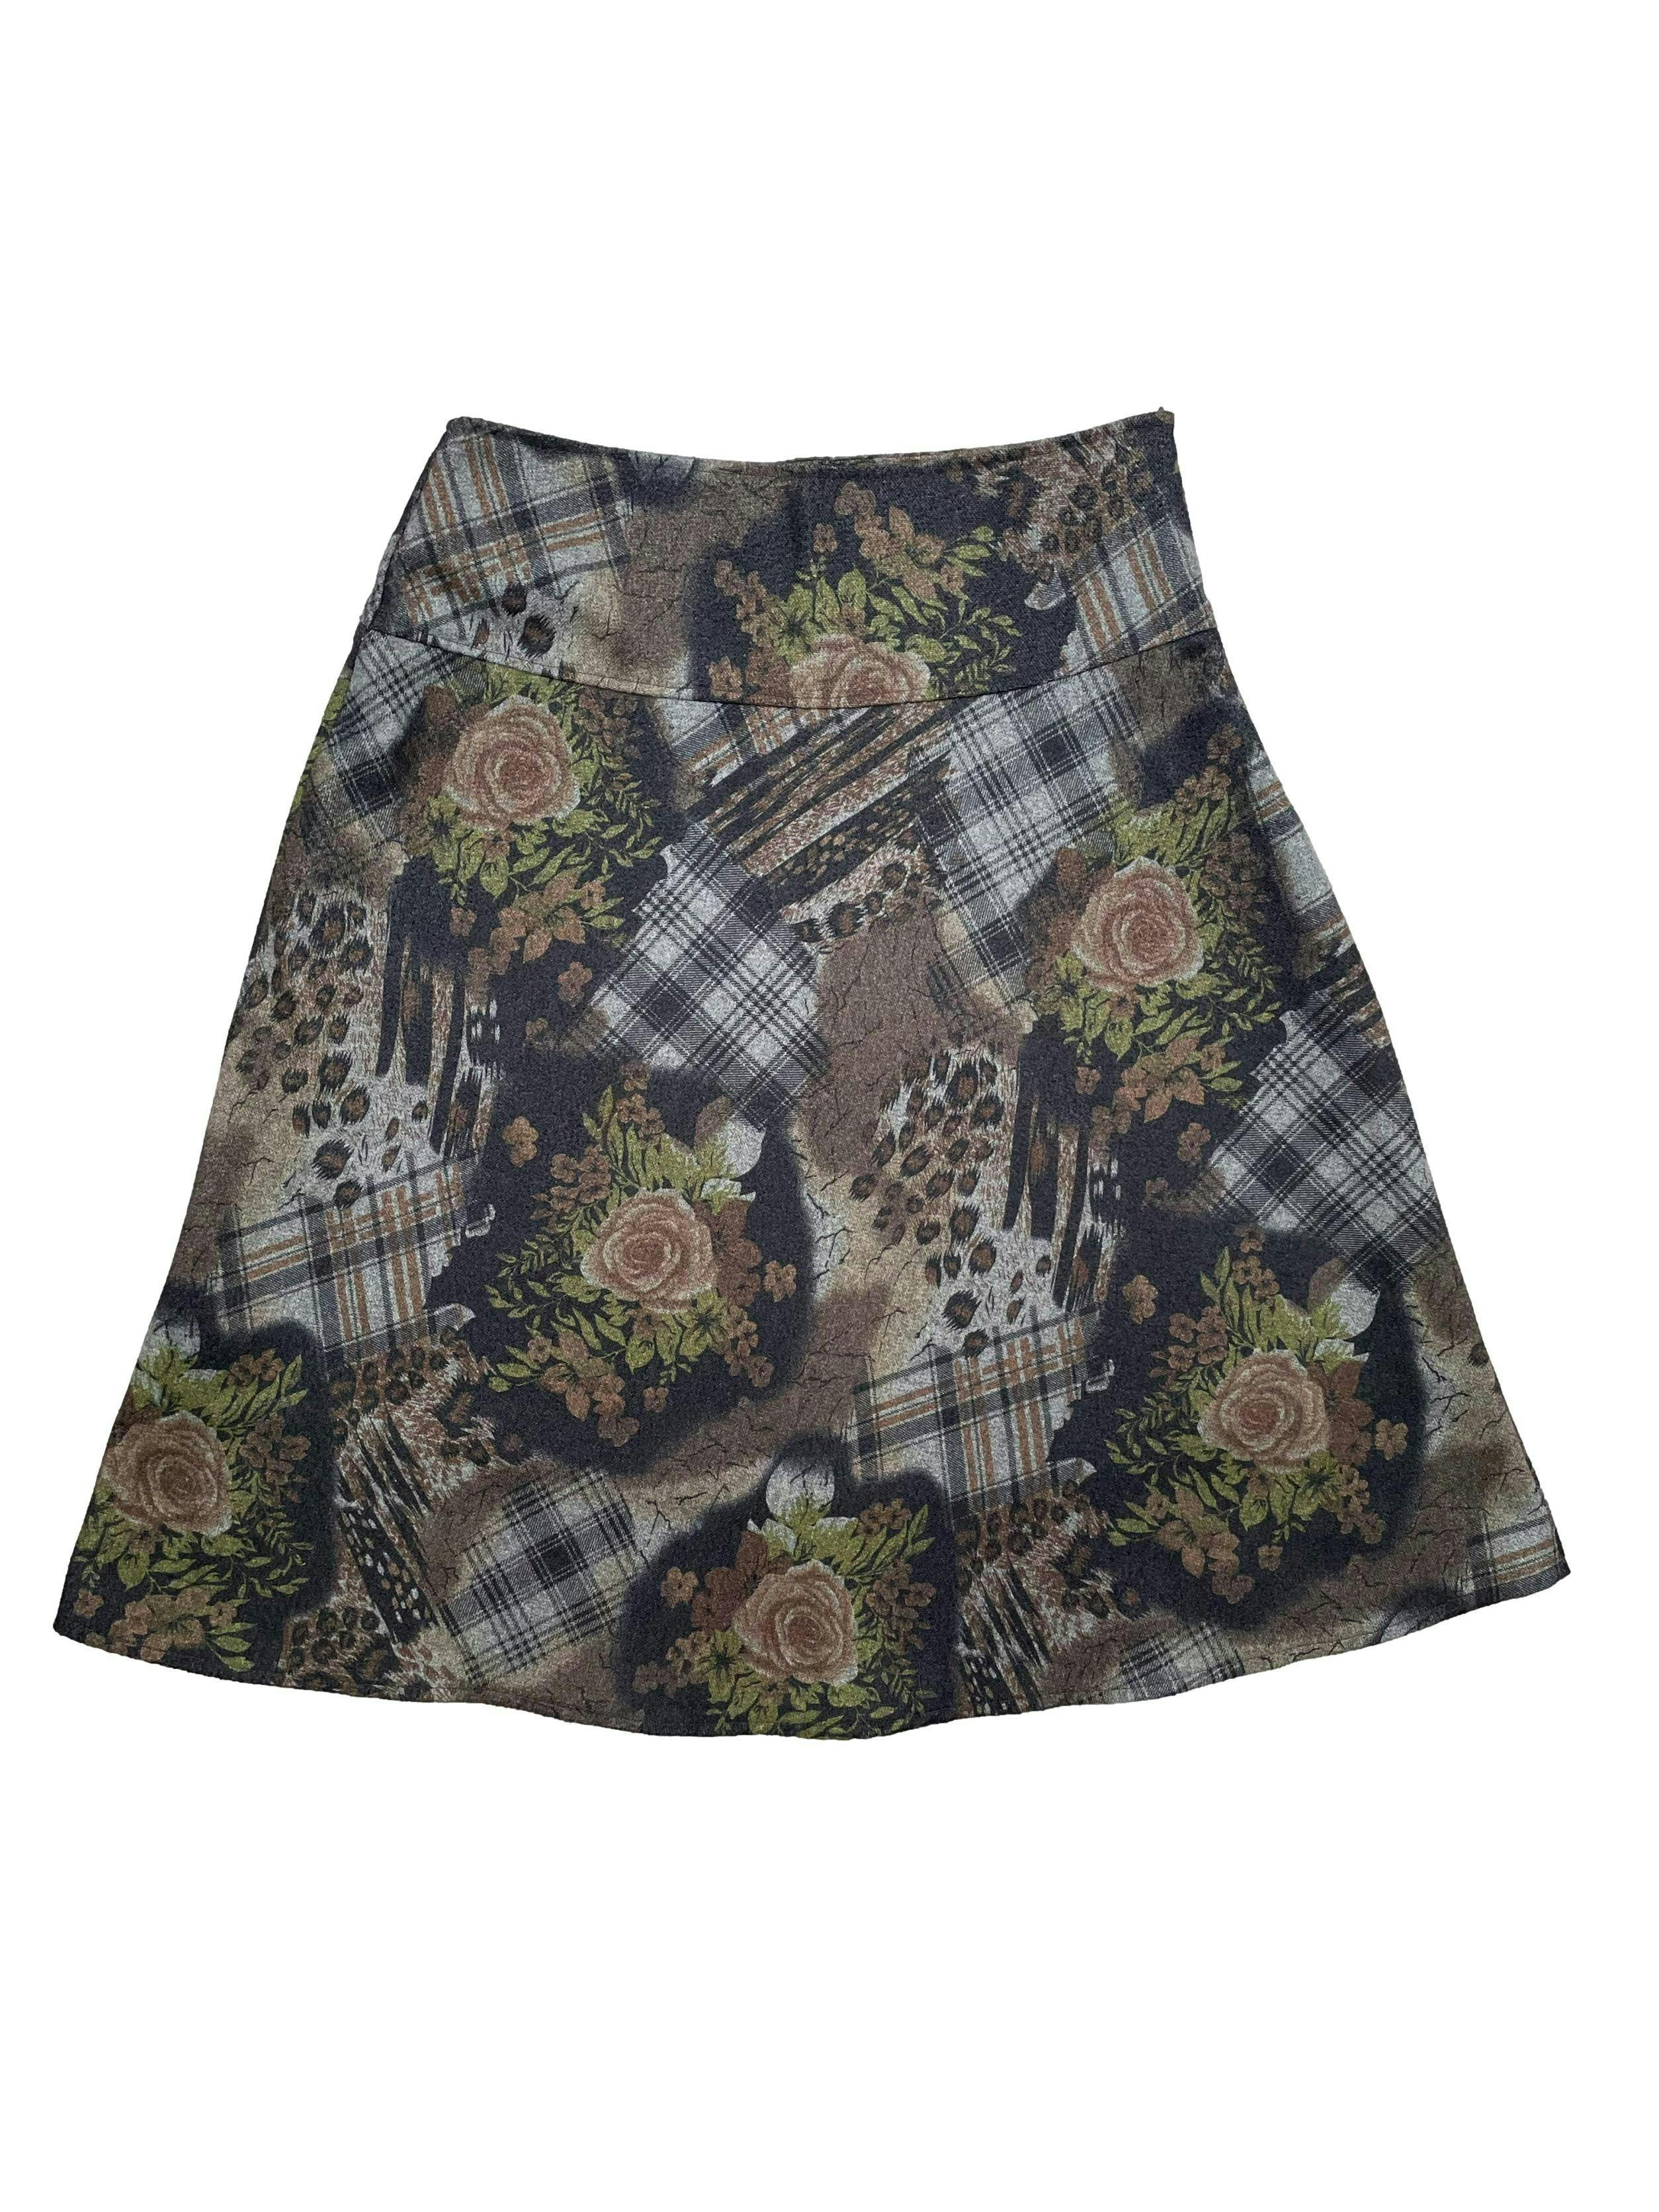 Falda de lanilla en tonos tierra con estampado floral y a cuadros. Con forro , pretina alta y cierre invisible lateral. Cintura 72cm, Largo 63cm.